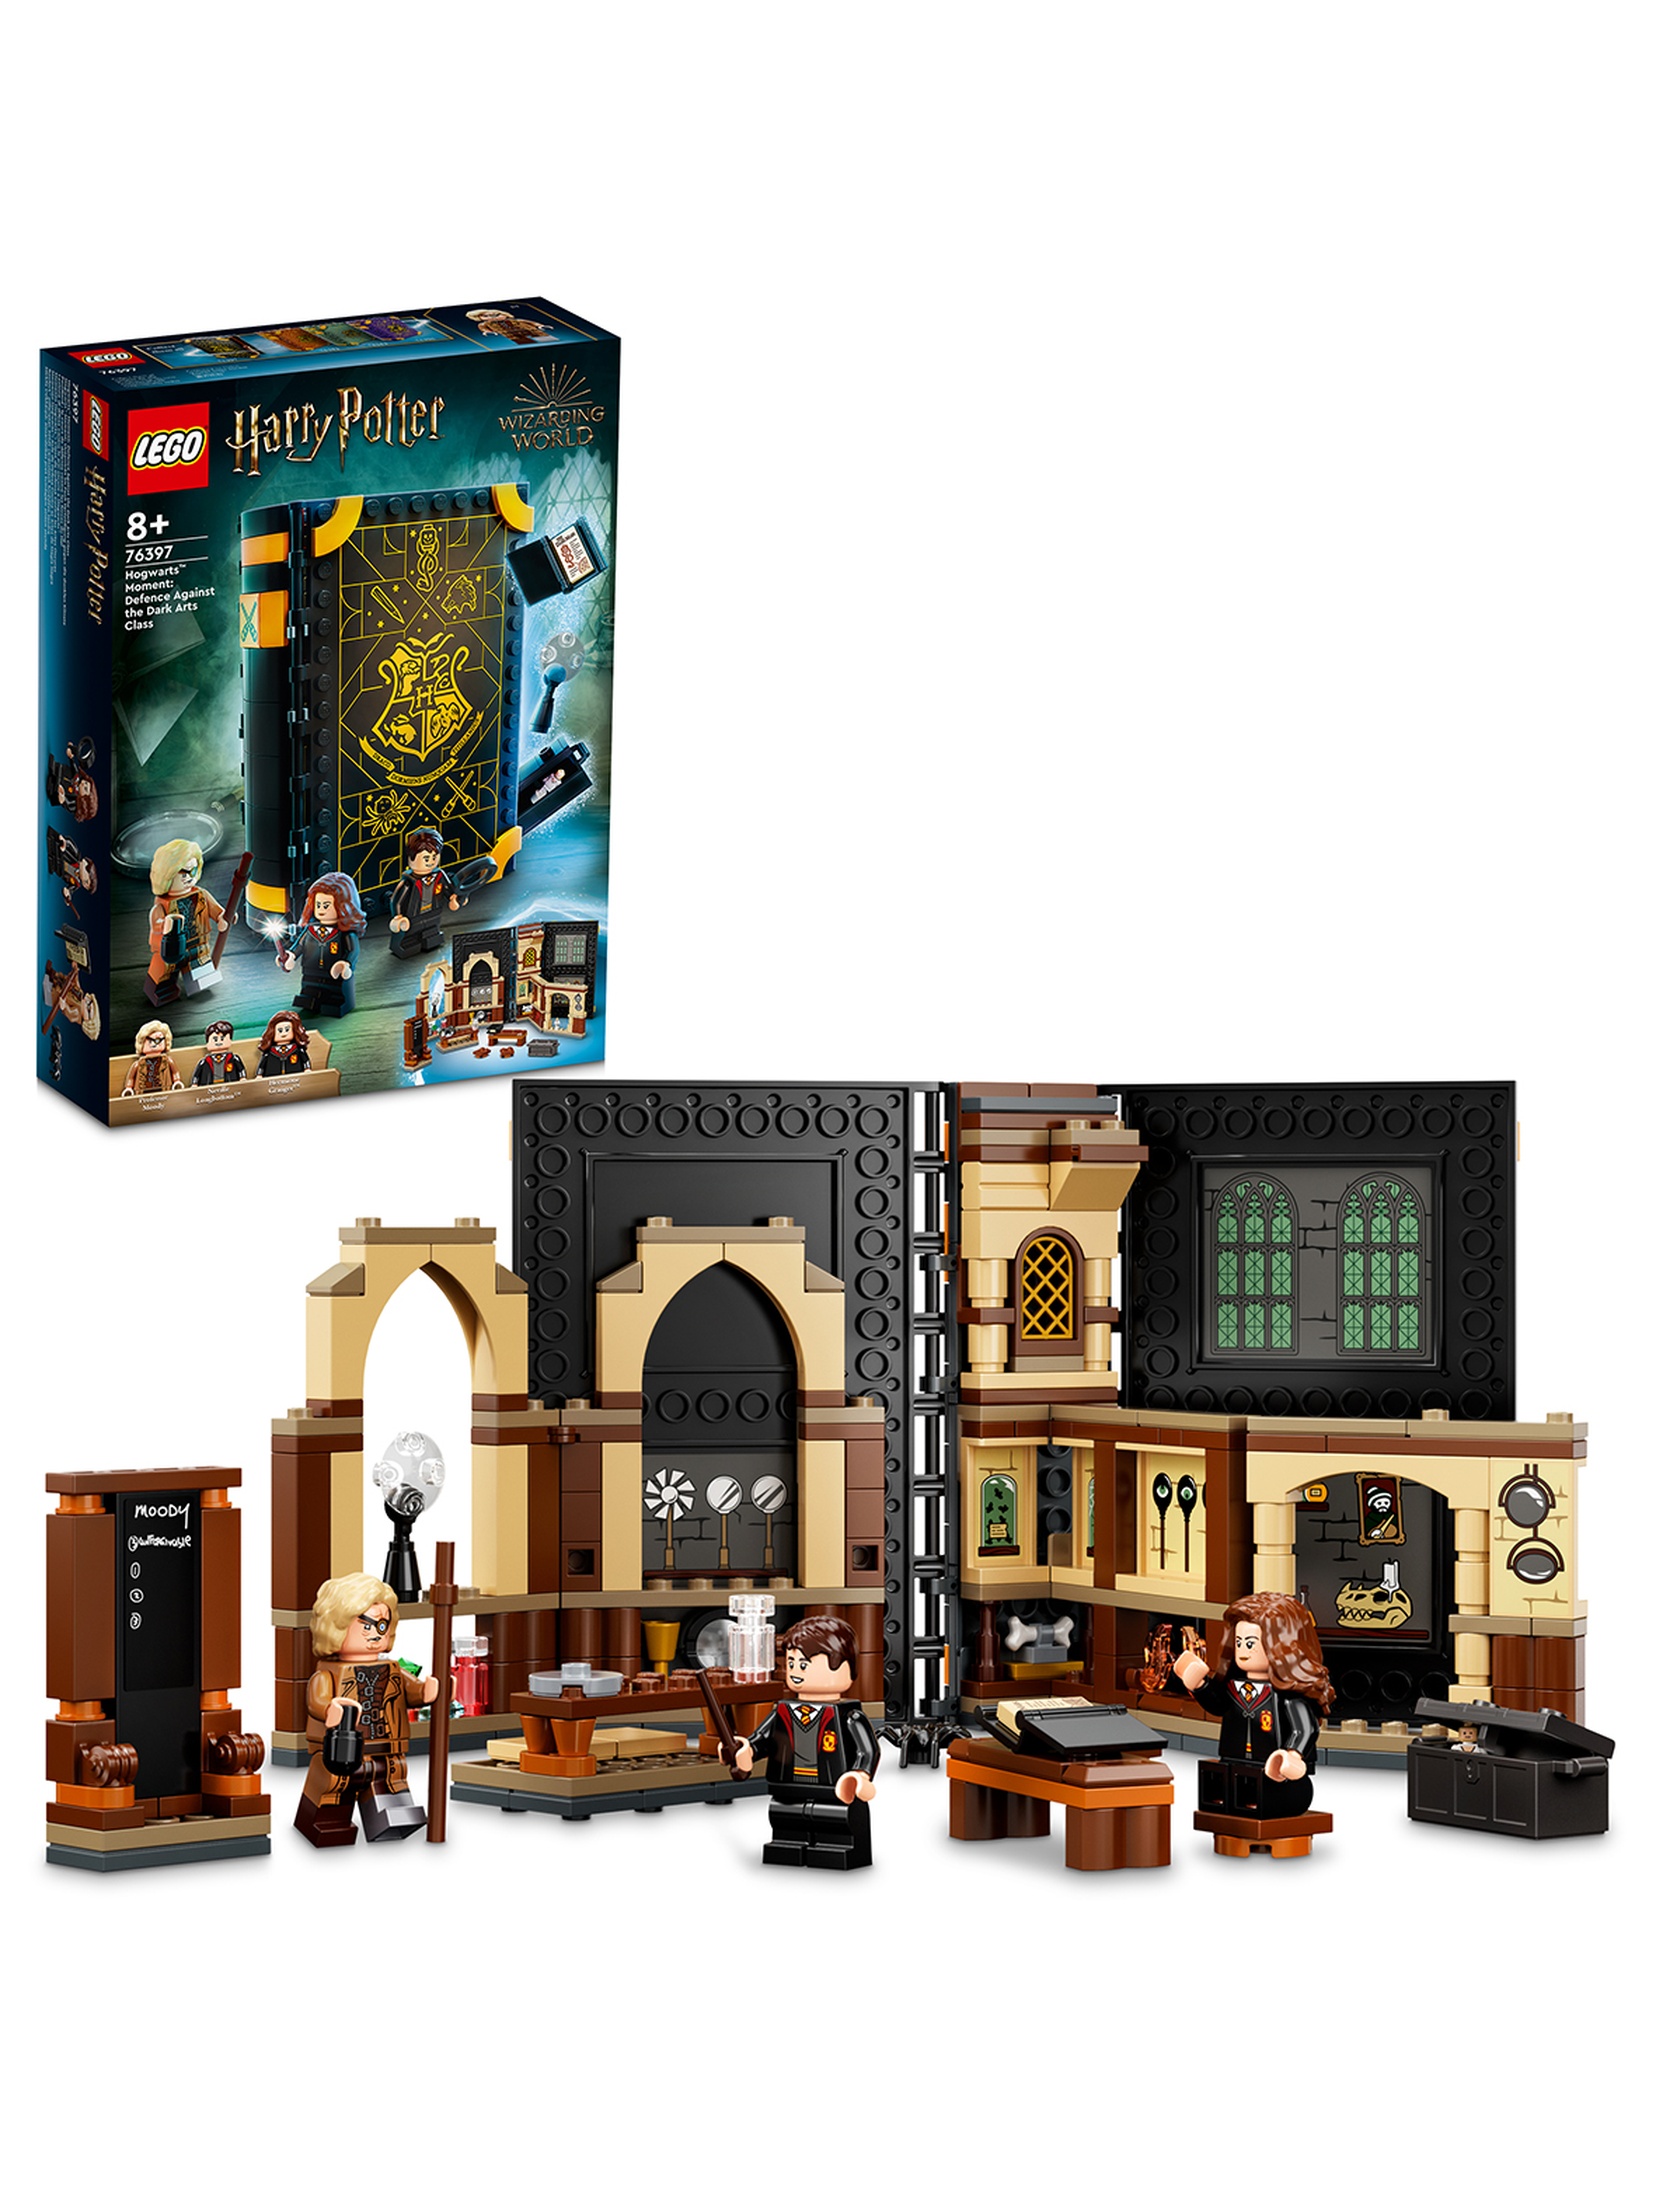 LEGO Harry Potter - Chwile z Hogwartu: zajęcia z obrony przed czarną magią 76397 - 257 elementów, wiek 8+